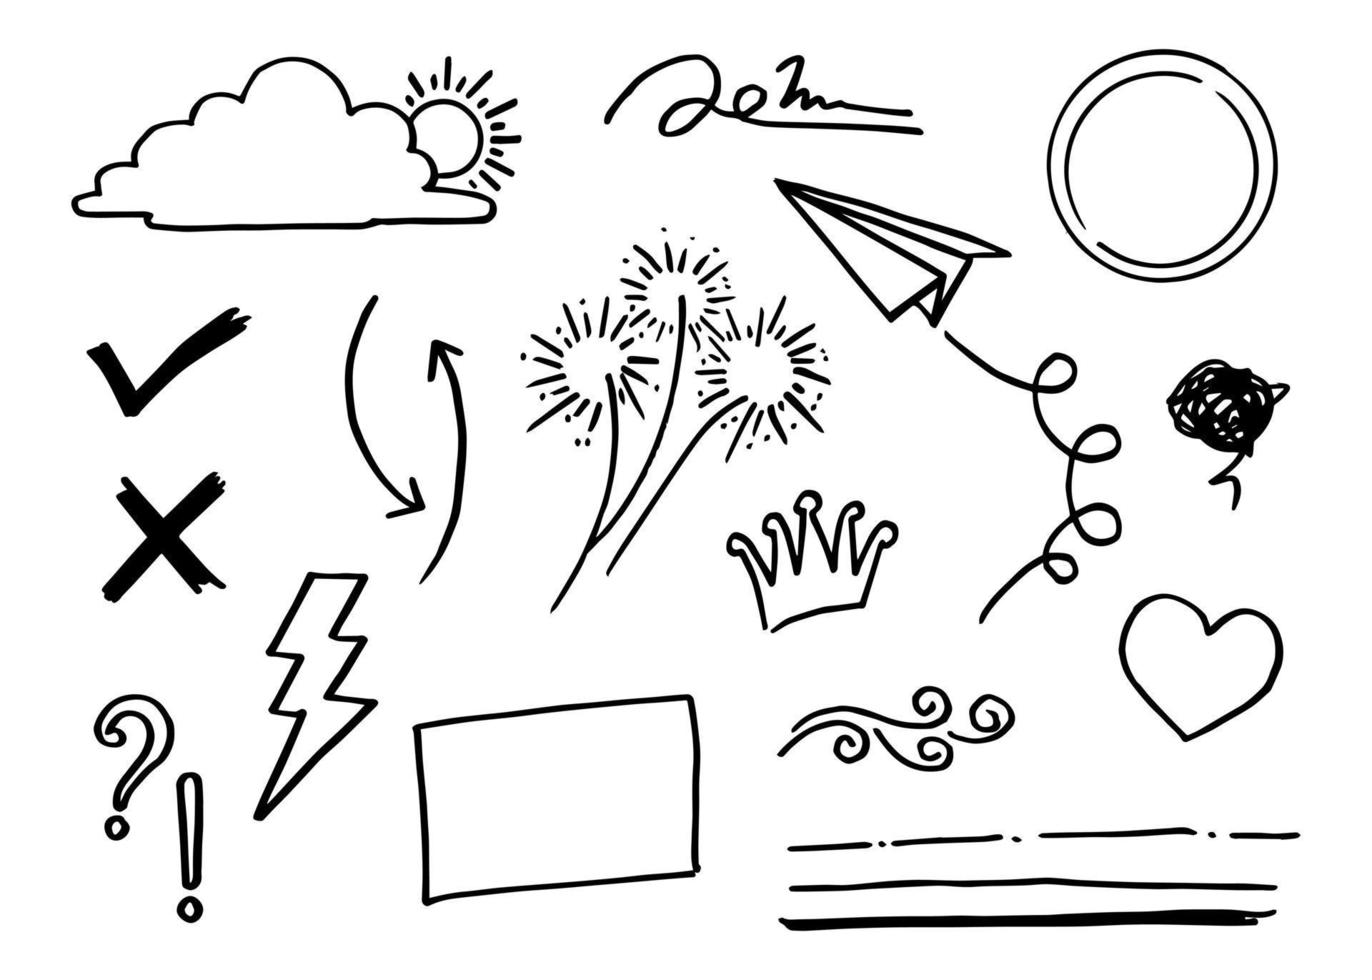 Doodle conjunto de vectores ilustración con vector de estilo de arte de línea de dibujo a mano. corona, rey, sol, flecha, corazón, amor, estrella, remolino, swoops, énfasis, para el diseño conceptual